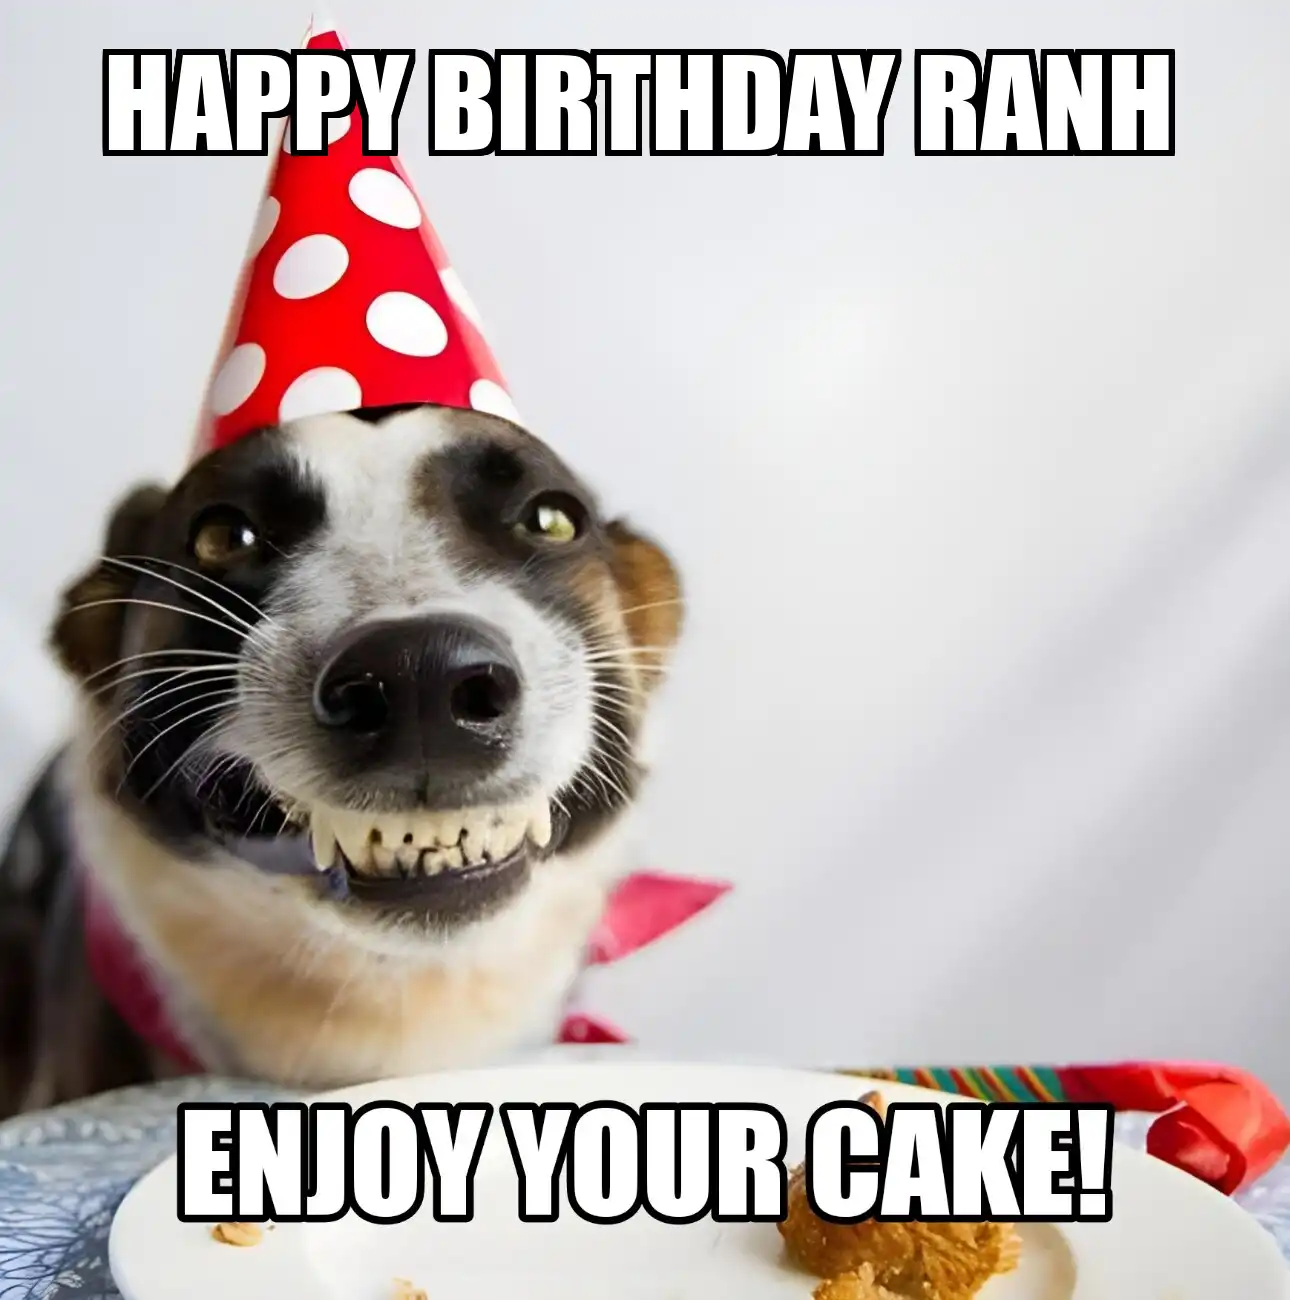 Happy Birthday Ranh Enjoy Your Cake Dog Meme